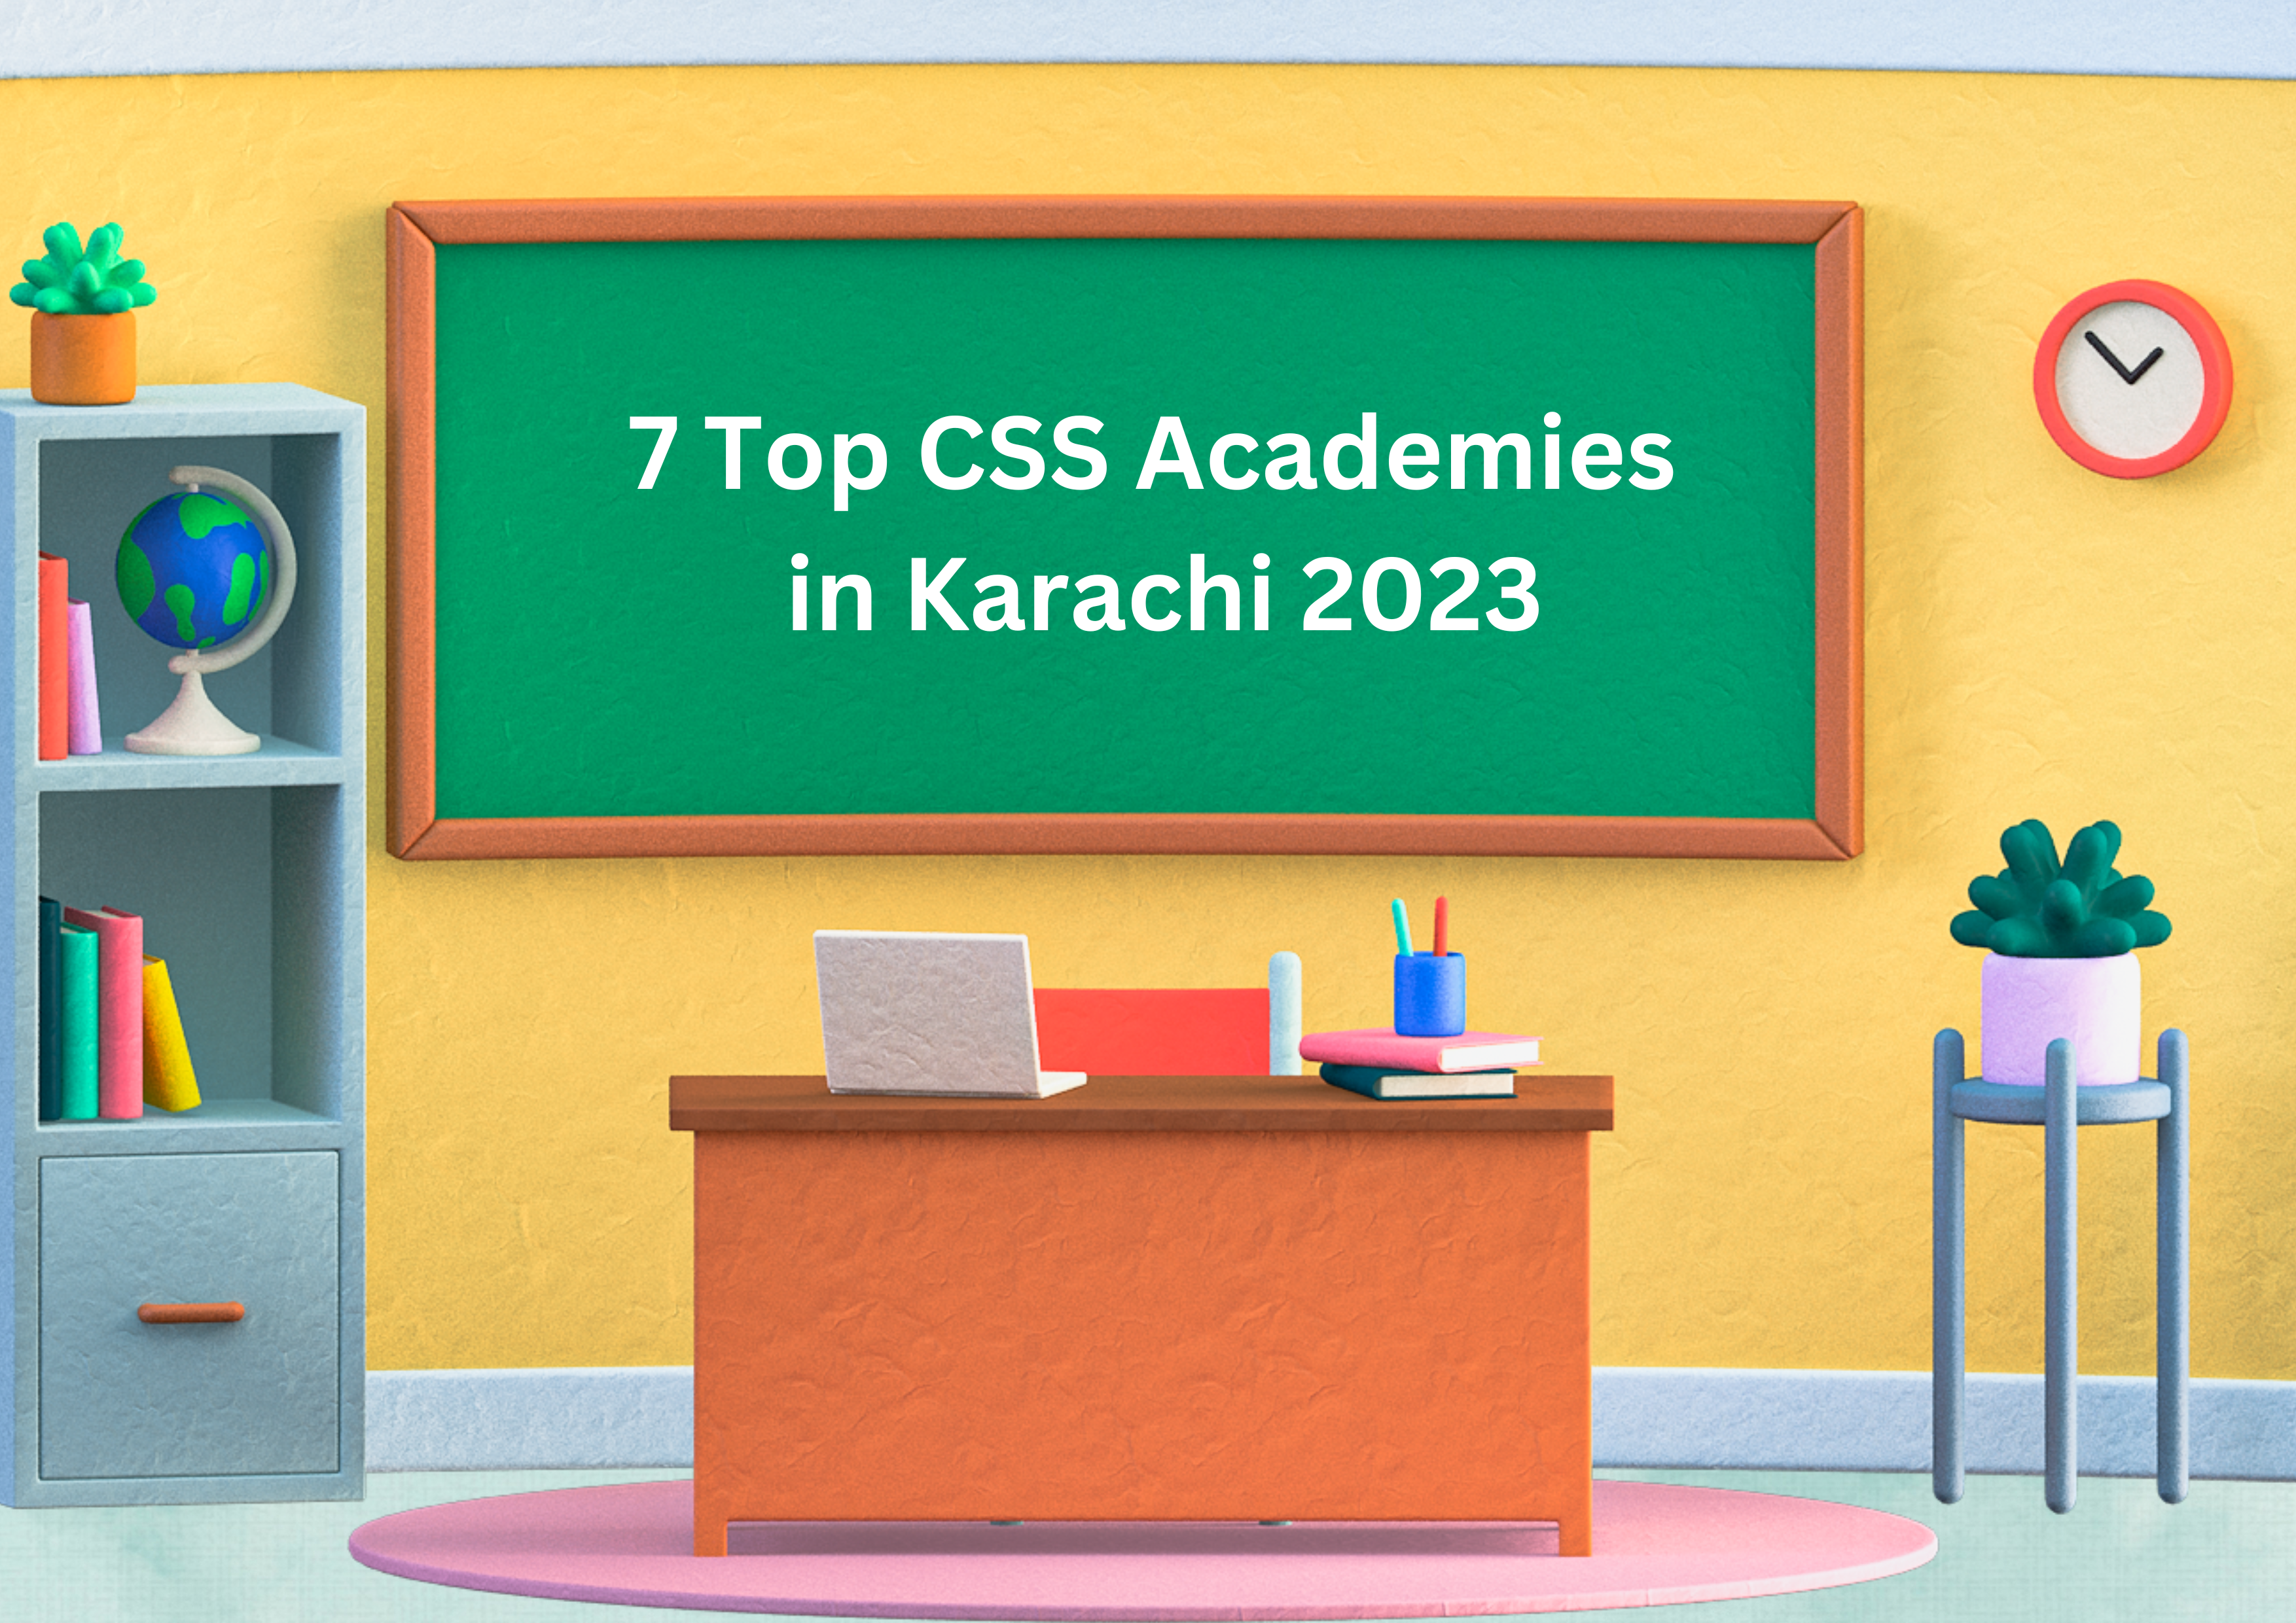 7 Top CSS Academies in Karachi 2023